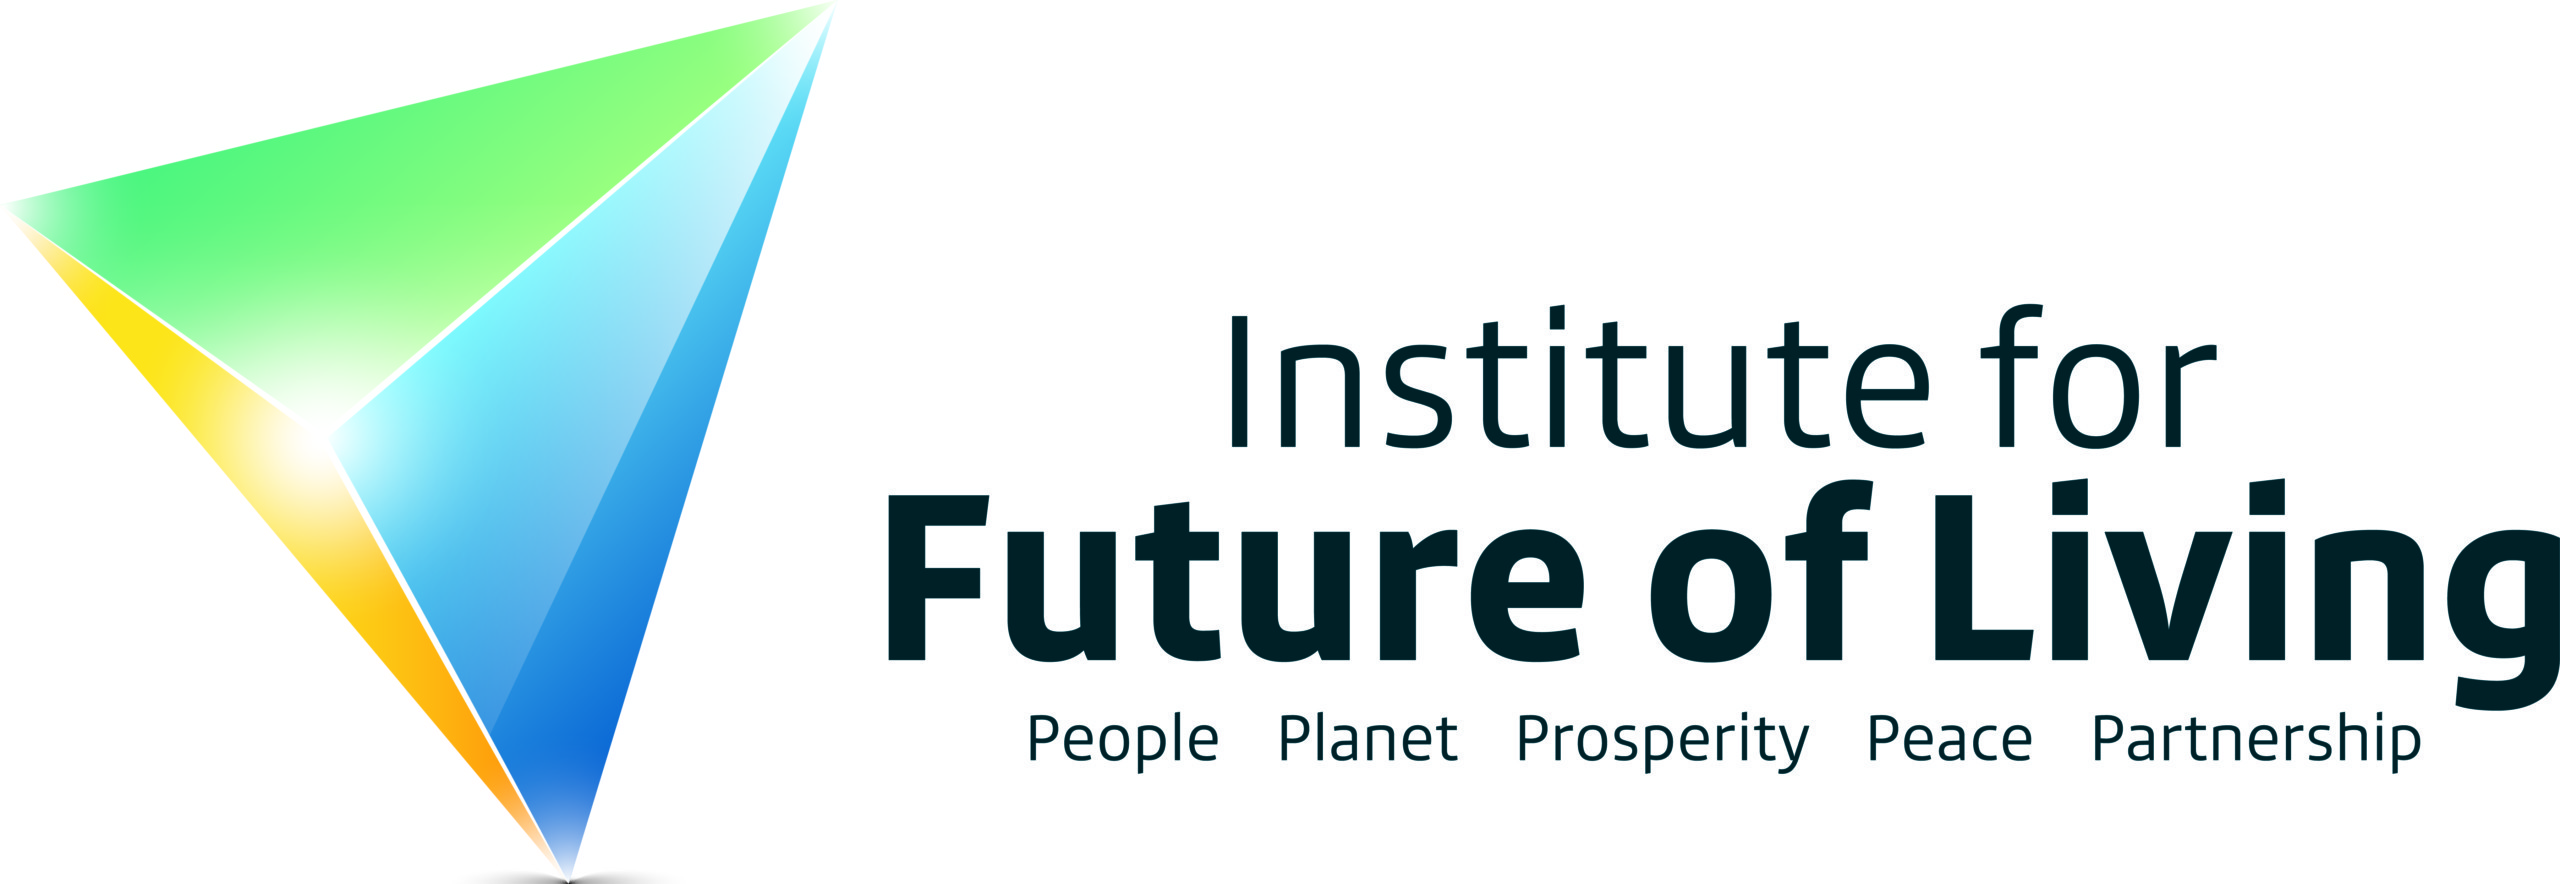 Institute for Future of Living